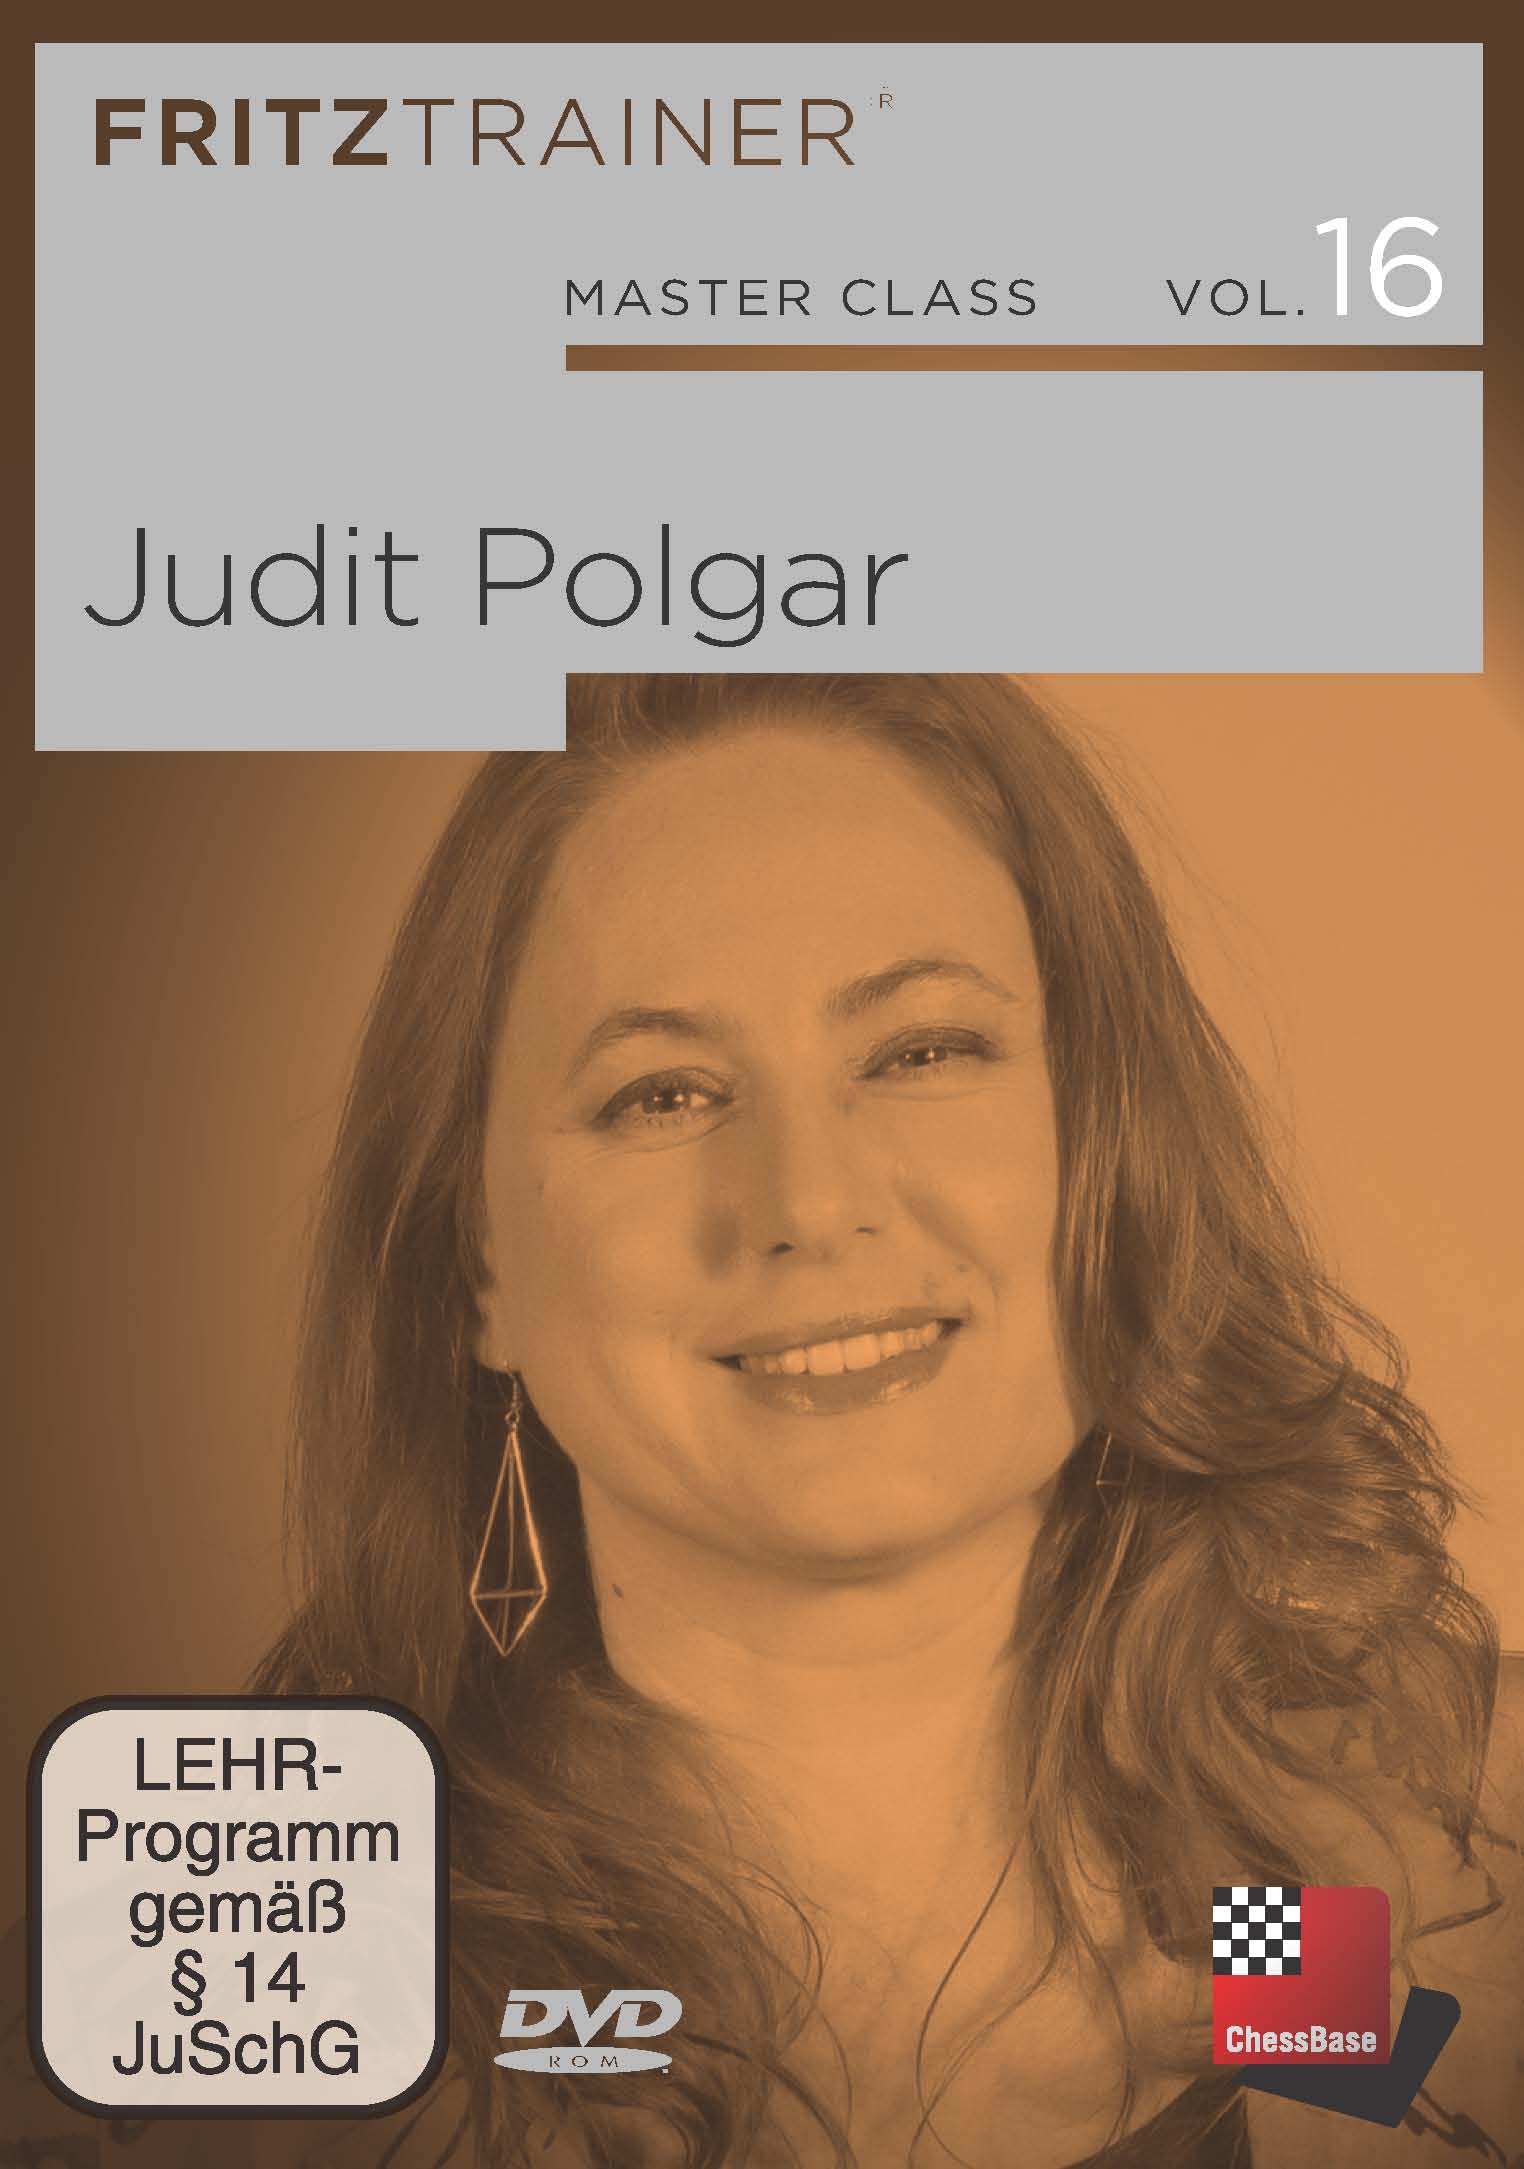 Master Class Vol. 16 - Judit Polgar